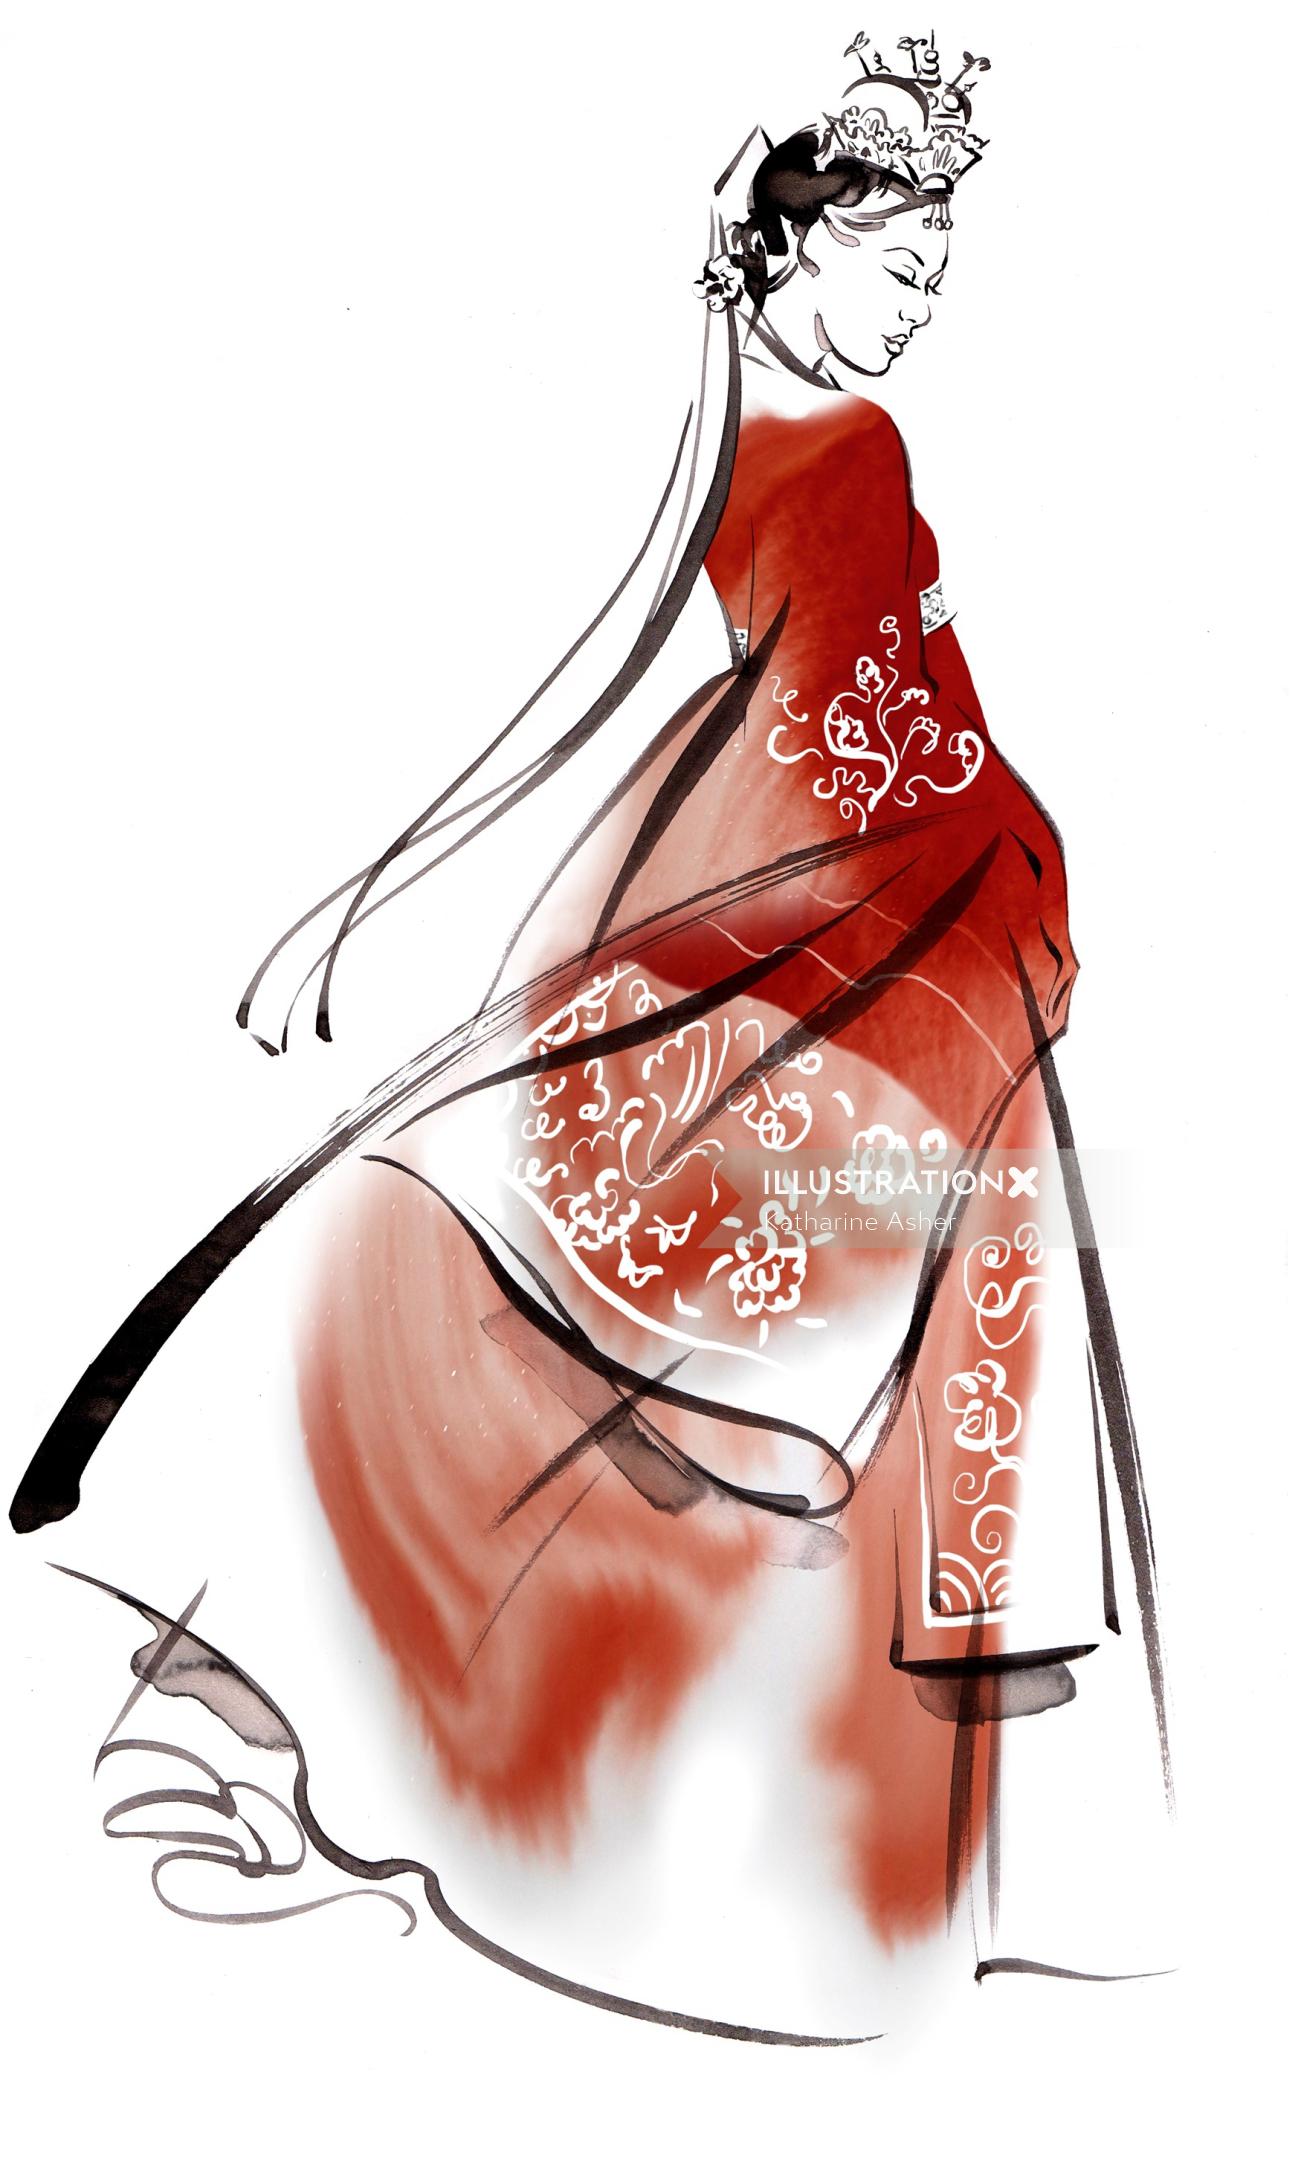 Ilustración de Hanbok por Katharine Asher